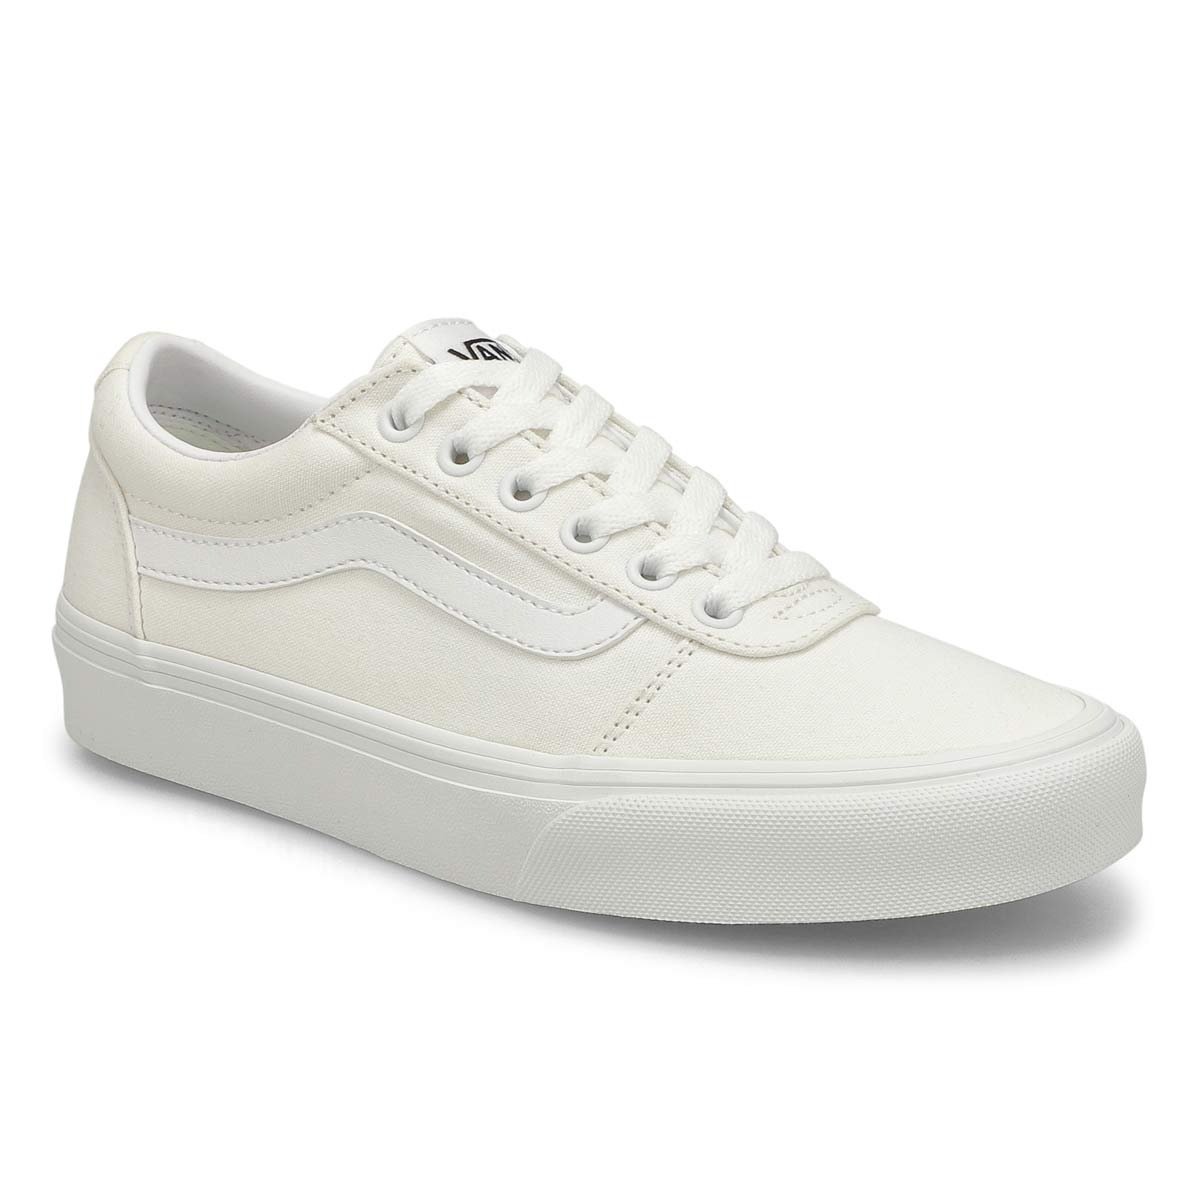 vans ward white sneakers